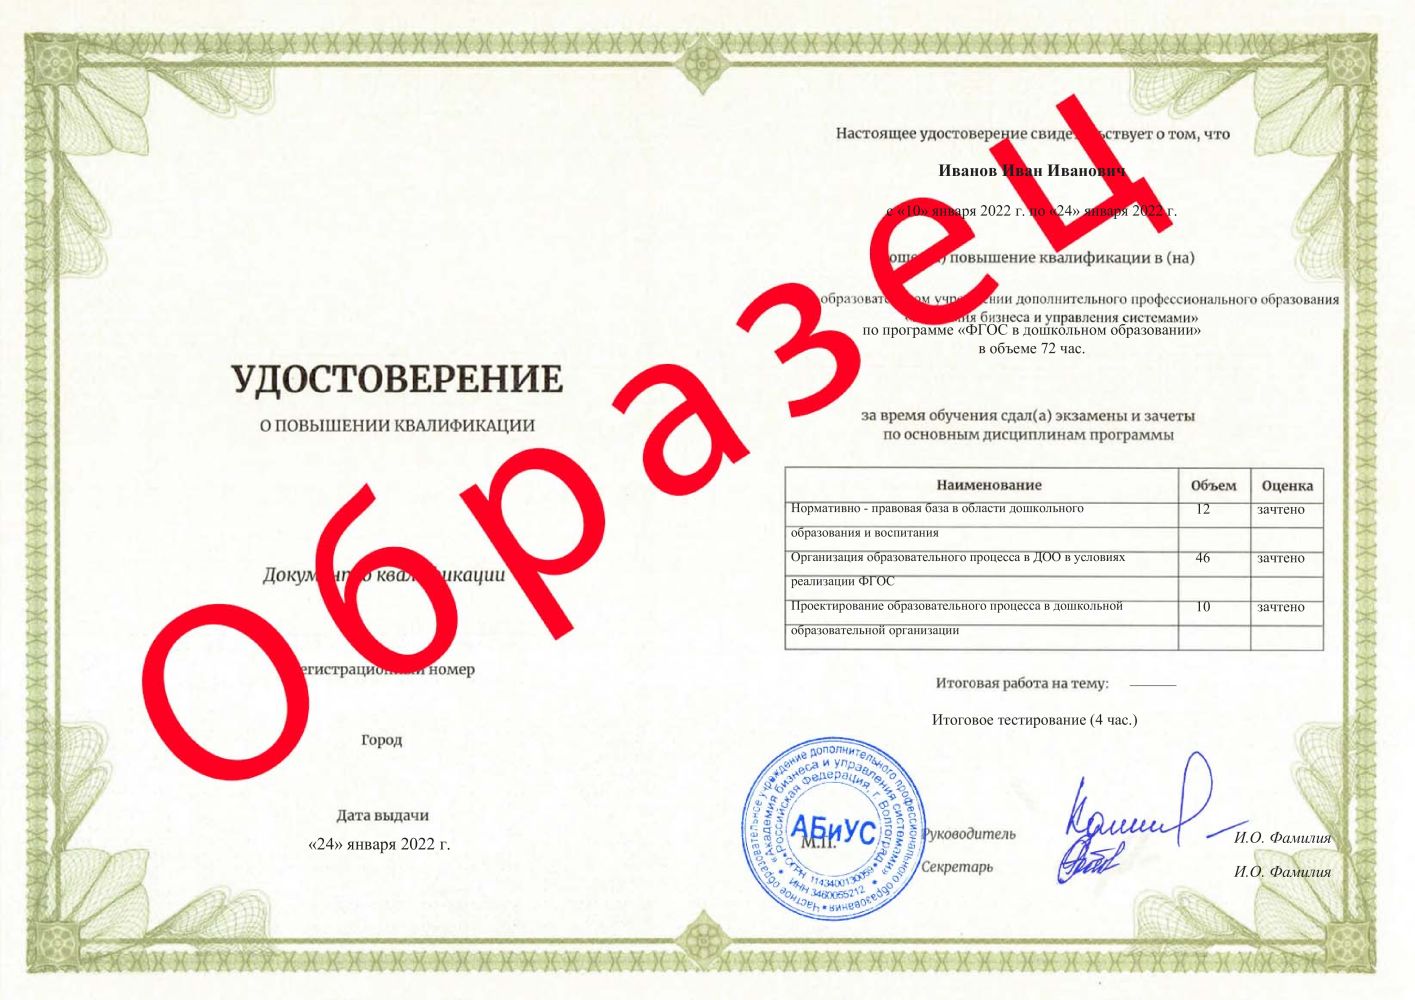 Удостоверение ФГОС в дошкольном образовании 72 часа 2267 руб.